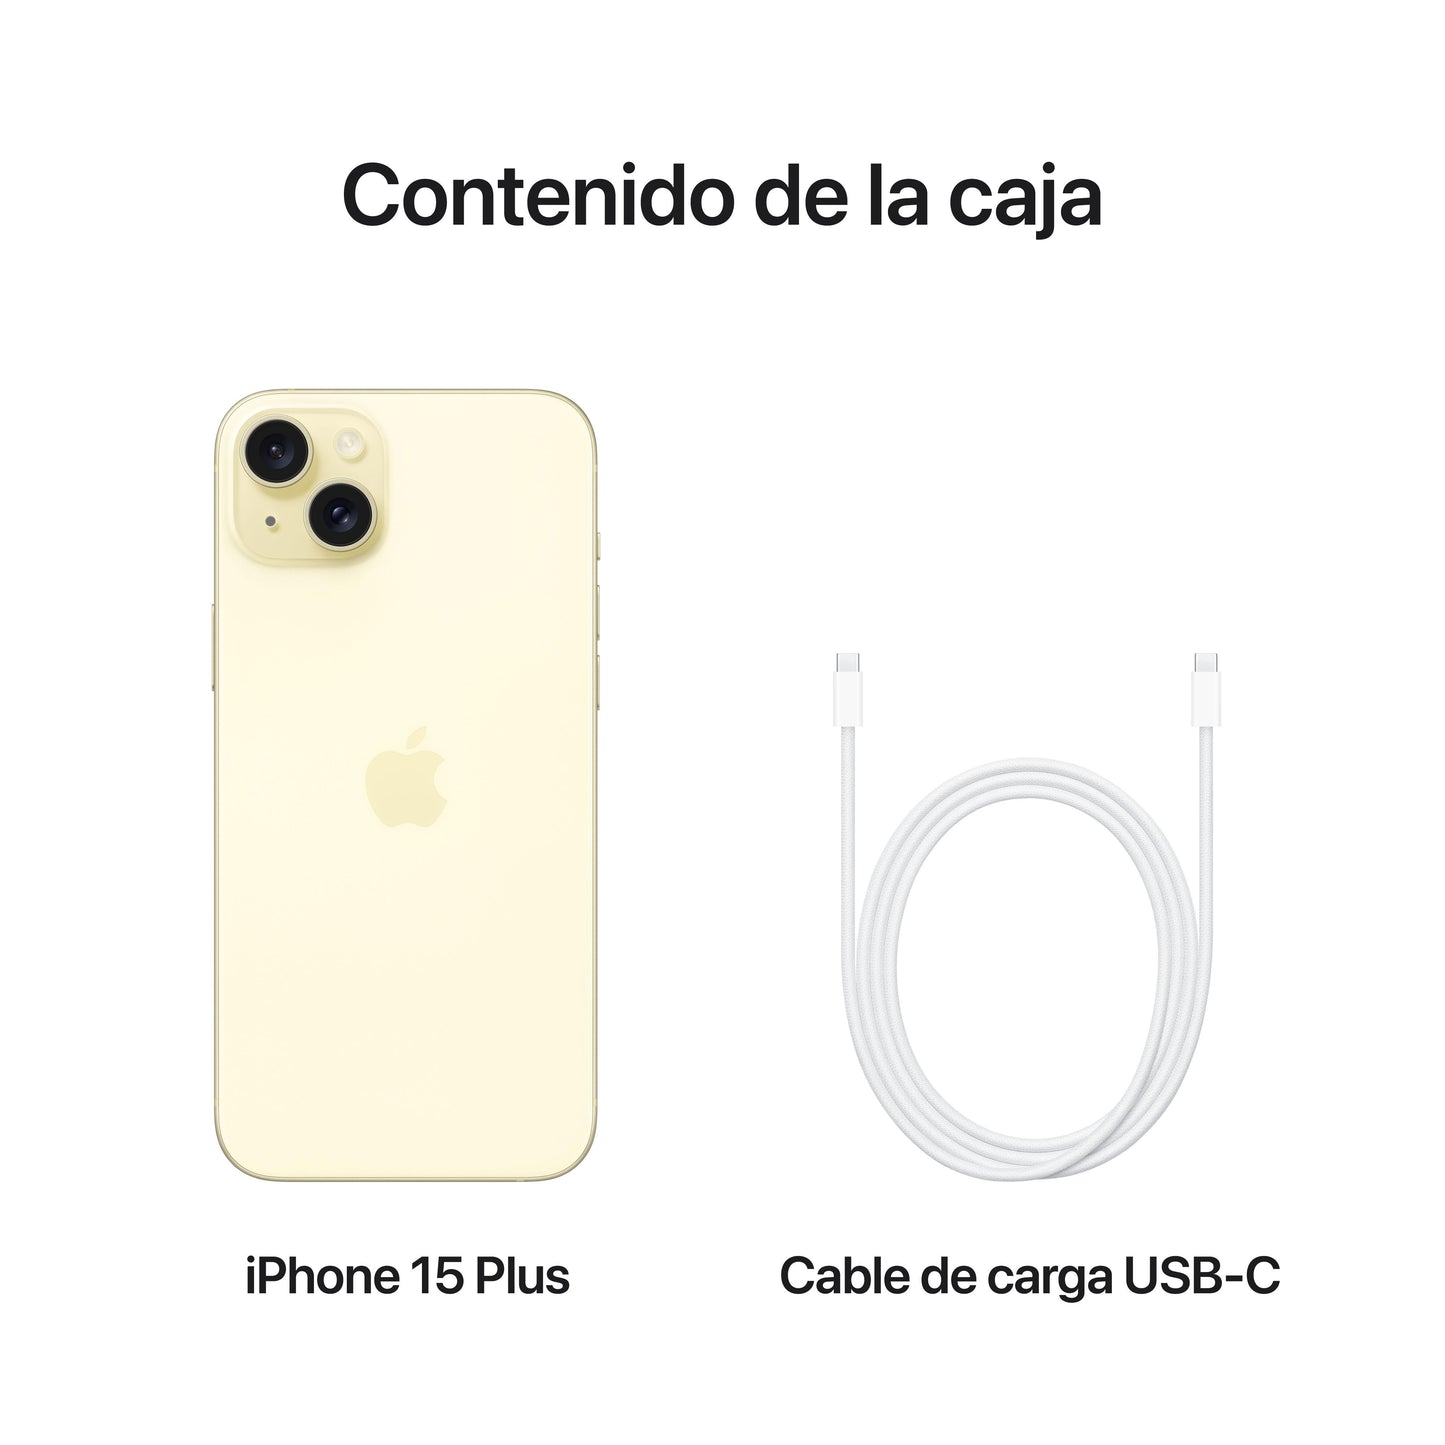 iPhone 15 Plus 512 GB en amarillo